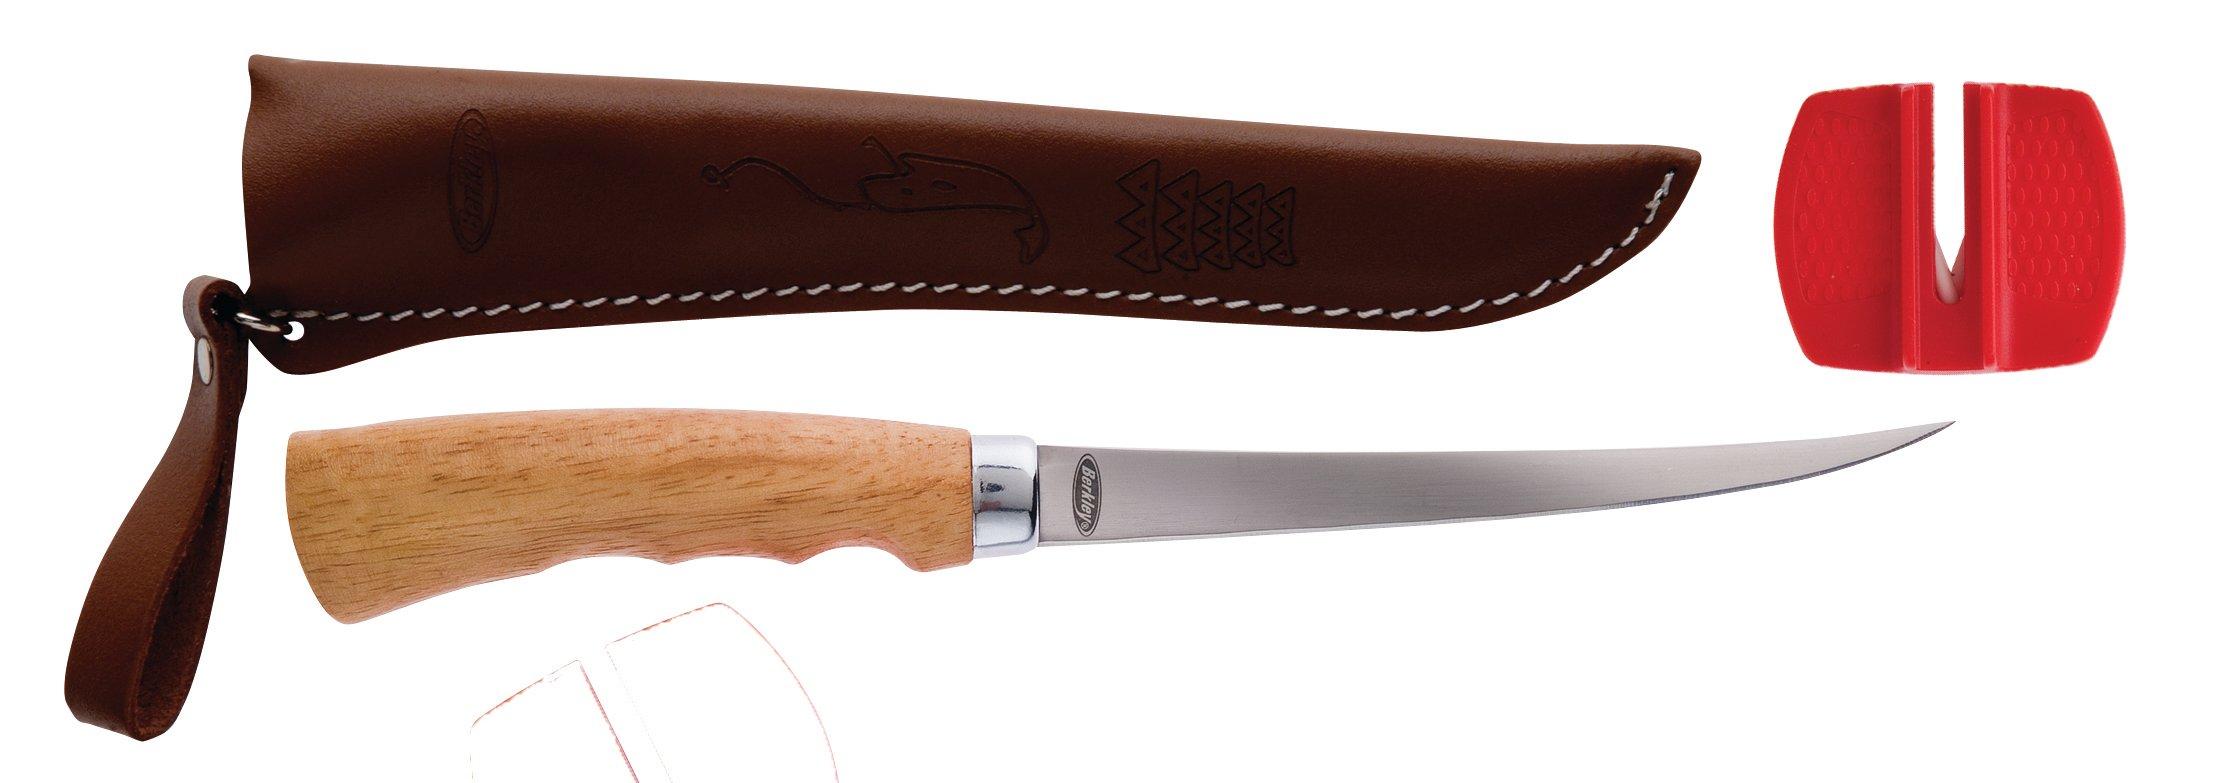 Berkley Wooden Handle Fillet Knife